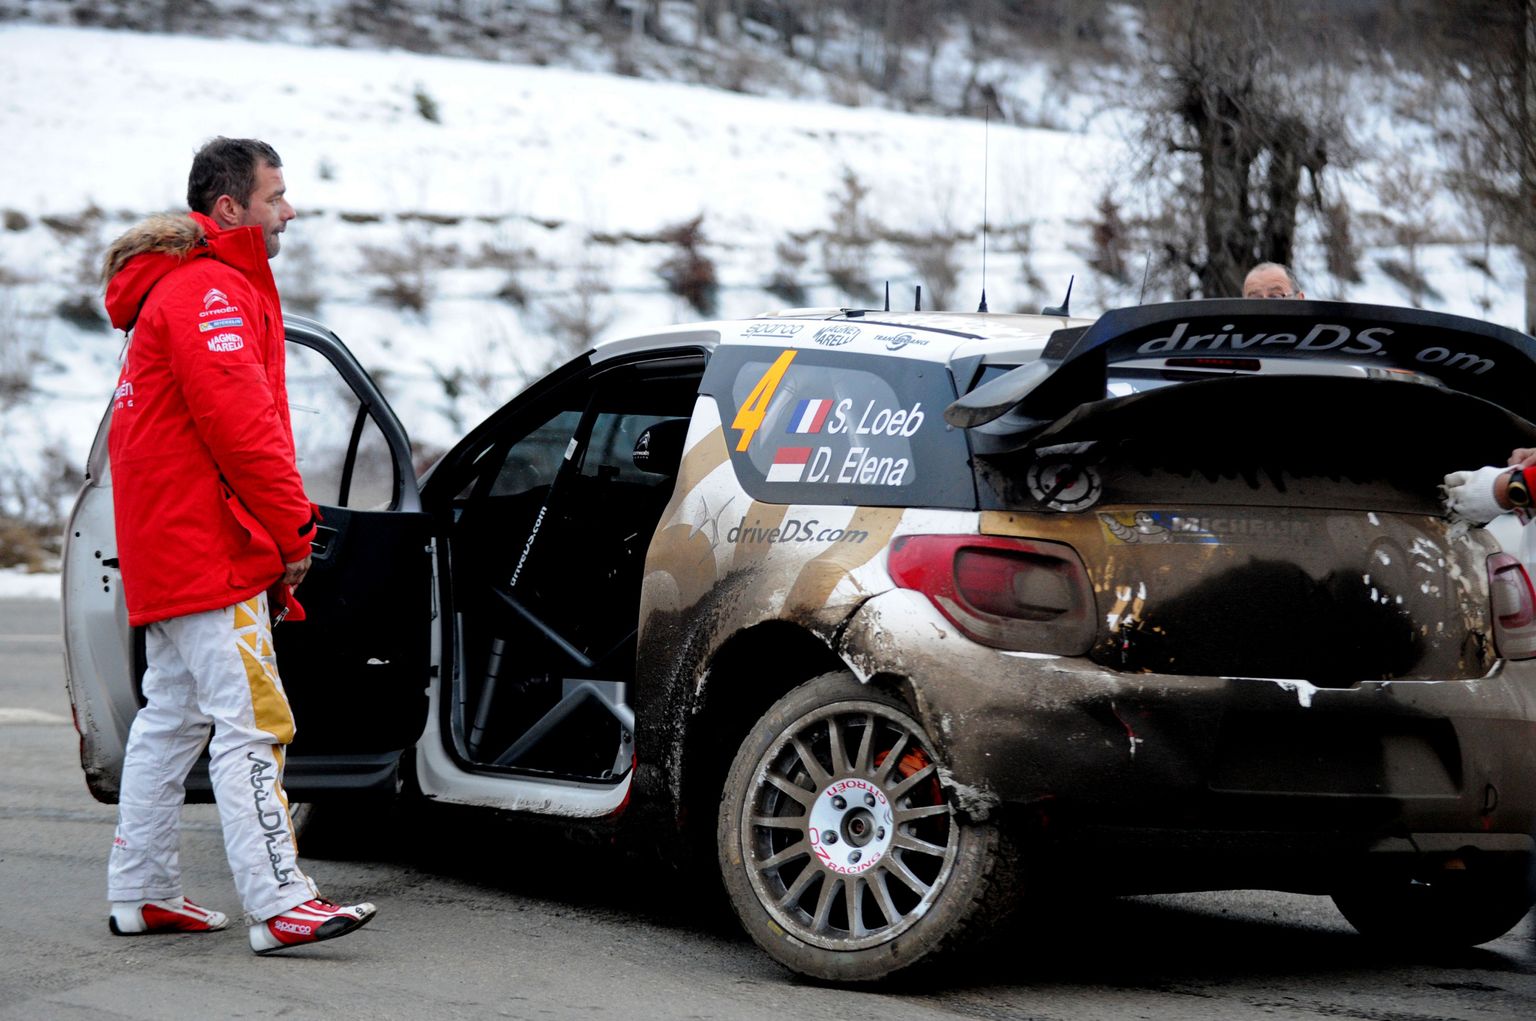 Sebastien Loeb sõitis viimati MM-rallil Monte Carlos 2015. aastal. Esimene tagasitulek lõppes aga kurvalt - kaheksandal kiiruskatsel sõitis ta vastu kivi ning katkestas.